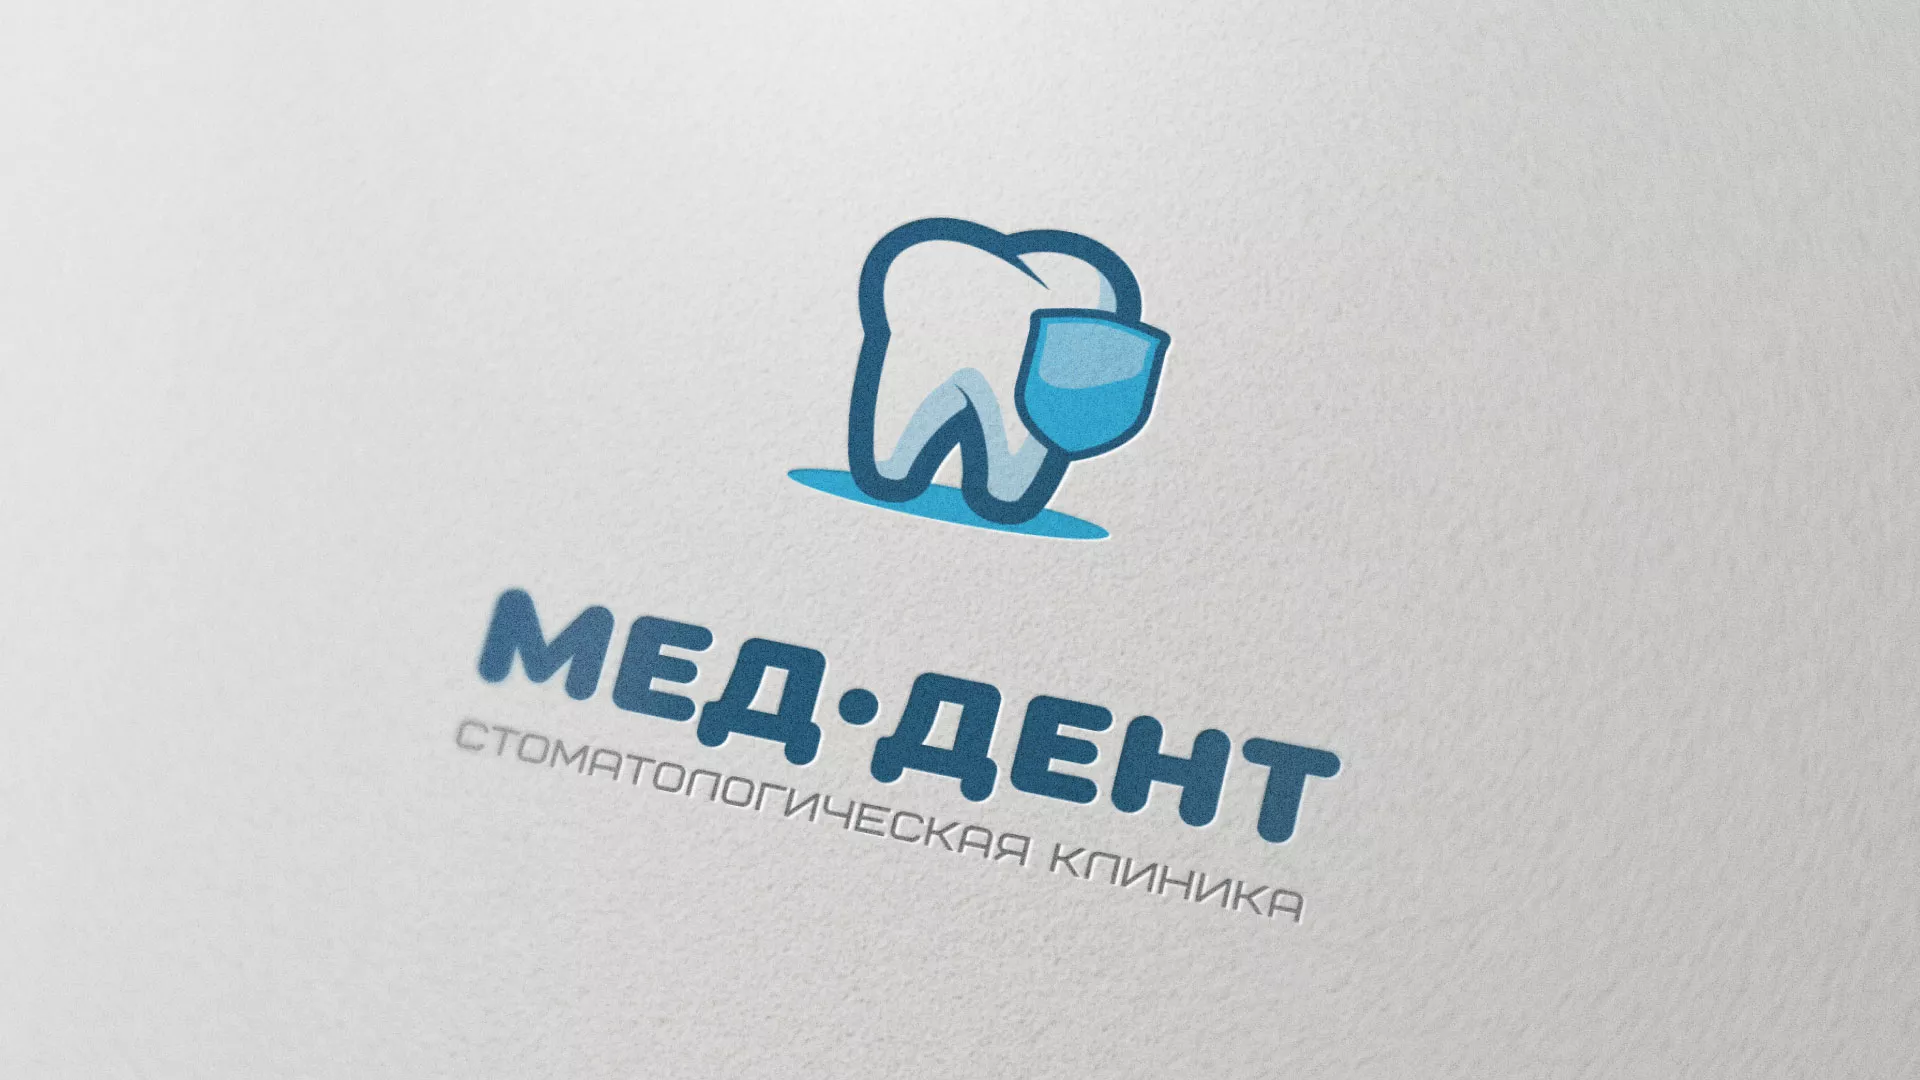 Разработка логотипа стоматологической клиники «МЕД-ДЕНТ» в Алексеевке